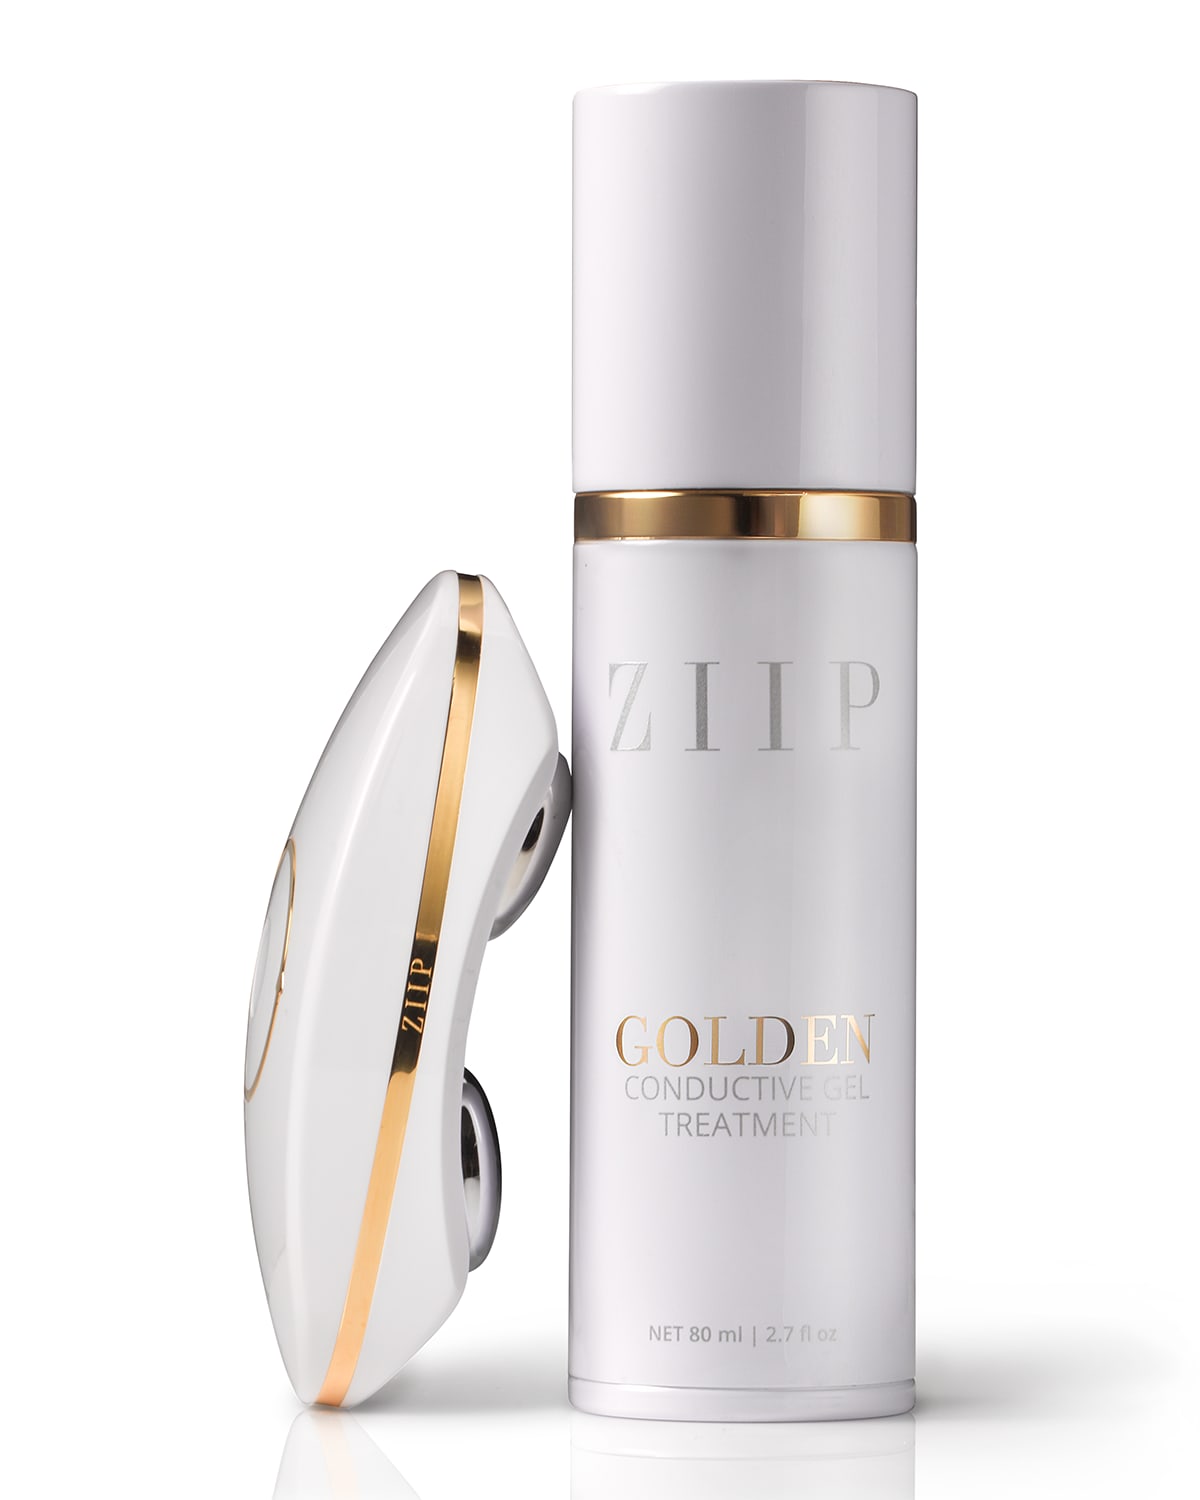 ZIIP Beauty Device & Golden Conductive Gel | Neiman Marcus